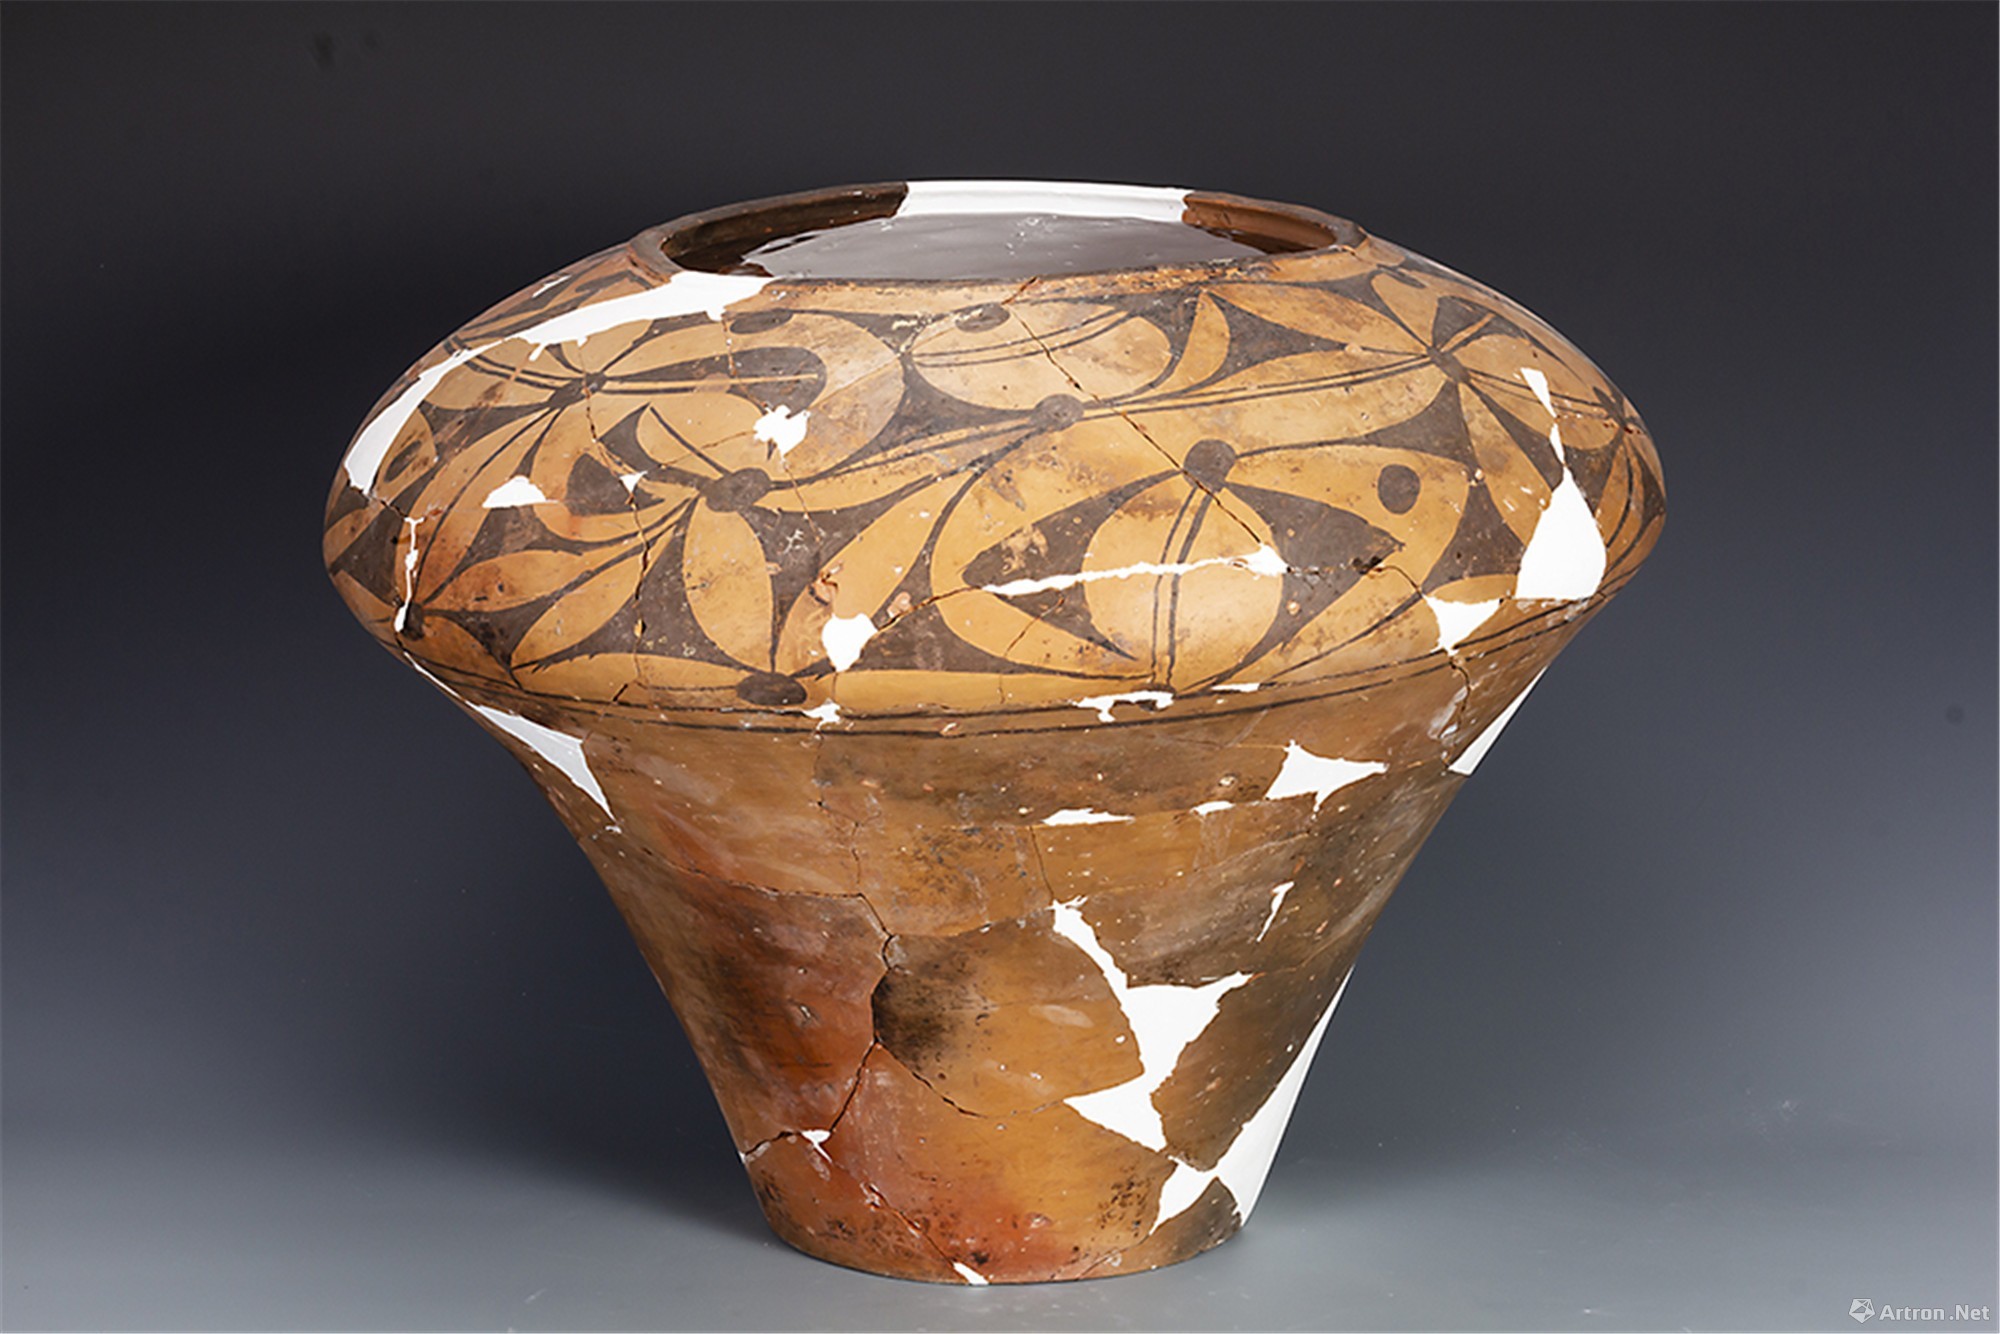 彩陶交媾图——先民性文化的实证-国宝彩陶艺术-图片